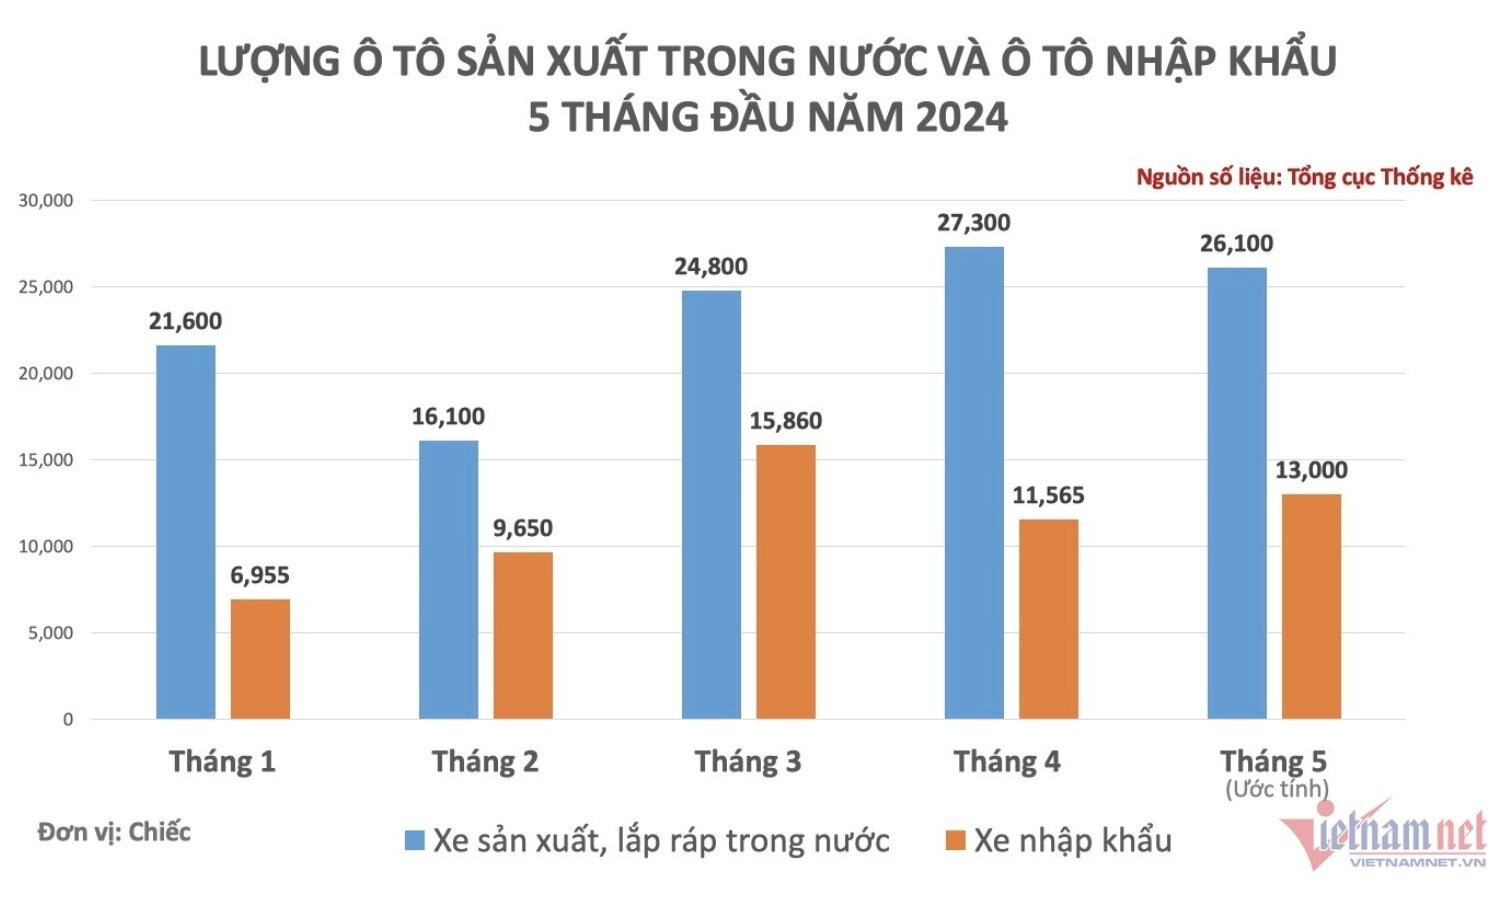 Lượng xe mới được bổ sung cho thị trường Việt Nam trong tháng 5 tăng nhẹ so với tháng trước. (Ảnh đồ hoạ: Hoàng Hiệp)